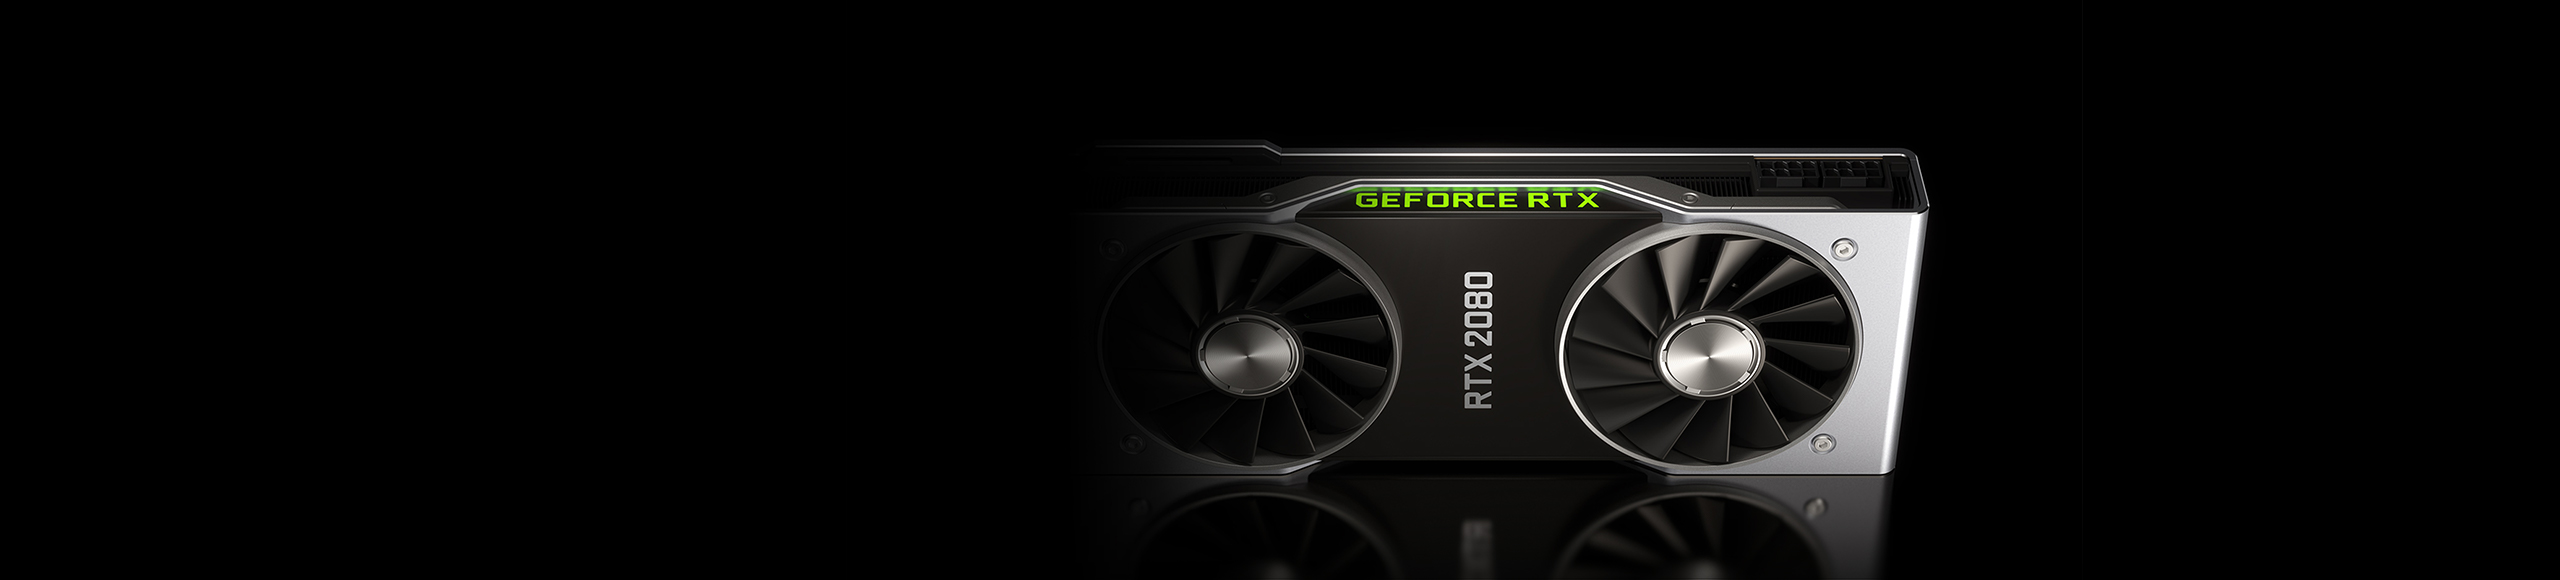 GeForce RTX 2080 グラフィックス カード - GeForce